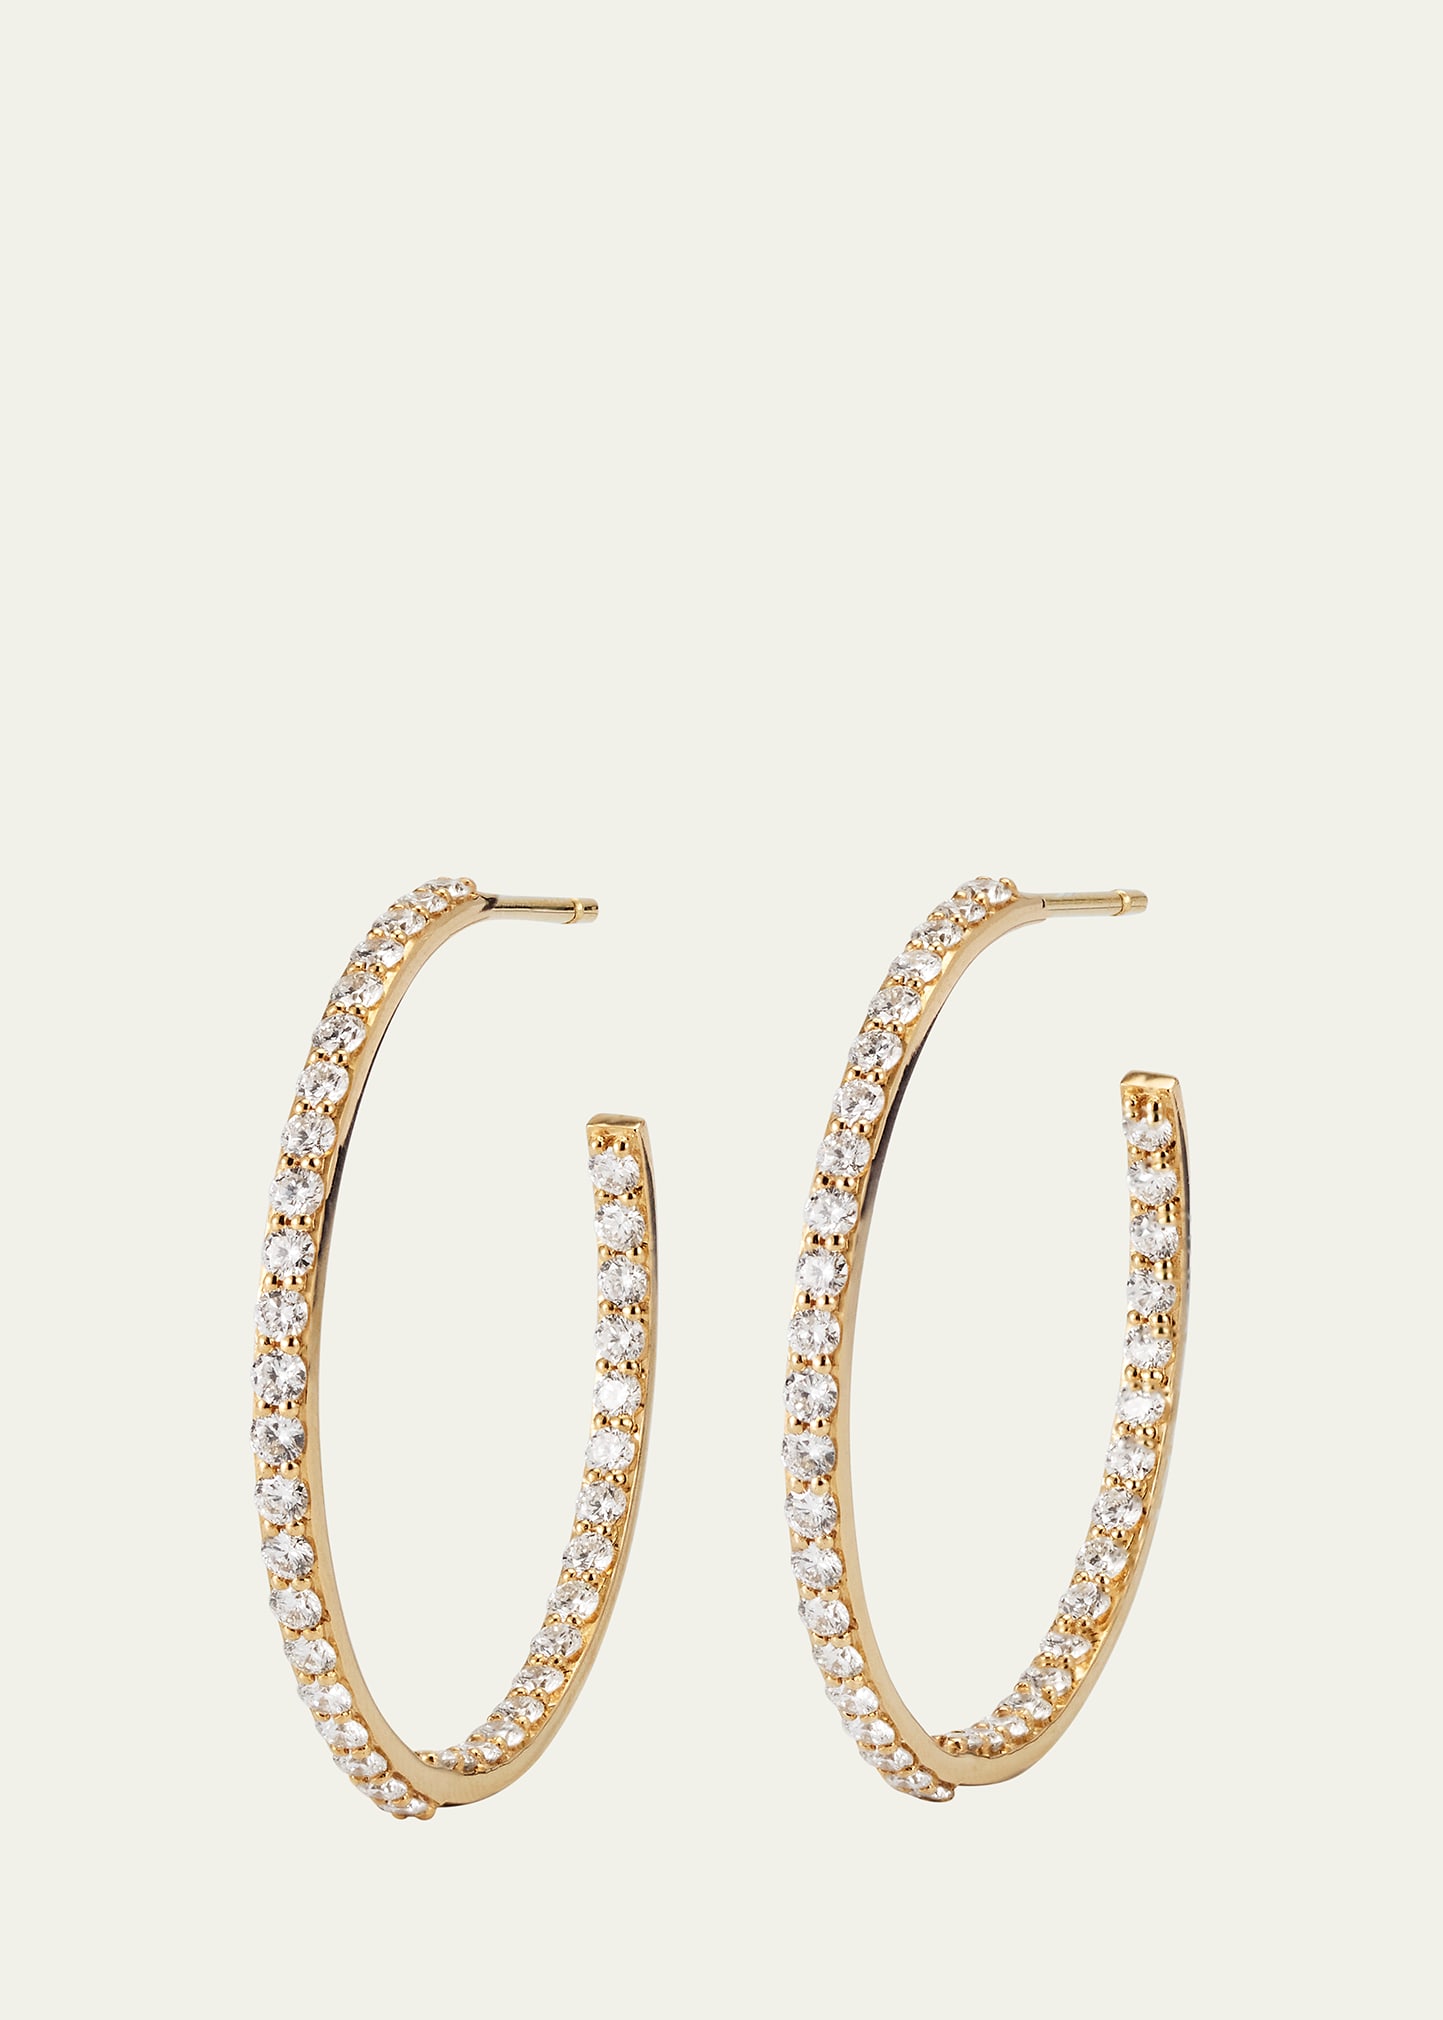 Lana Flawless 14k Yellow Gold Inside Outside Hoop Earrings With Diamonds In Yg